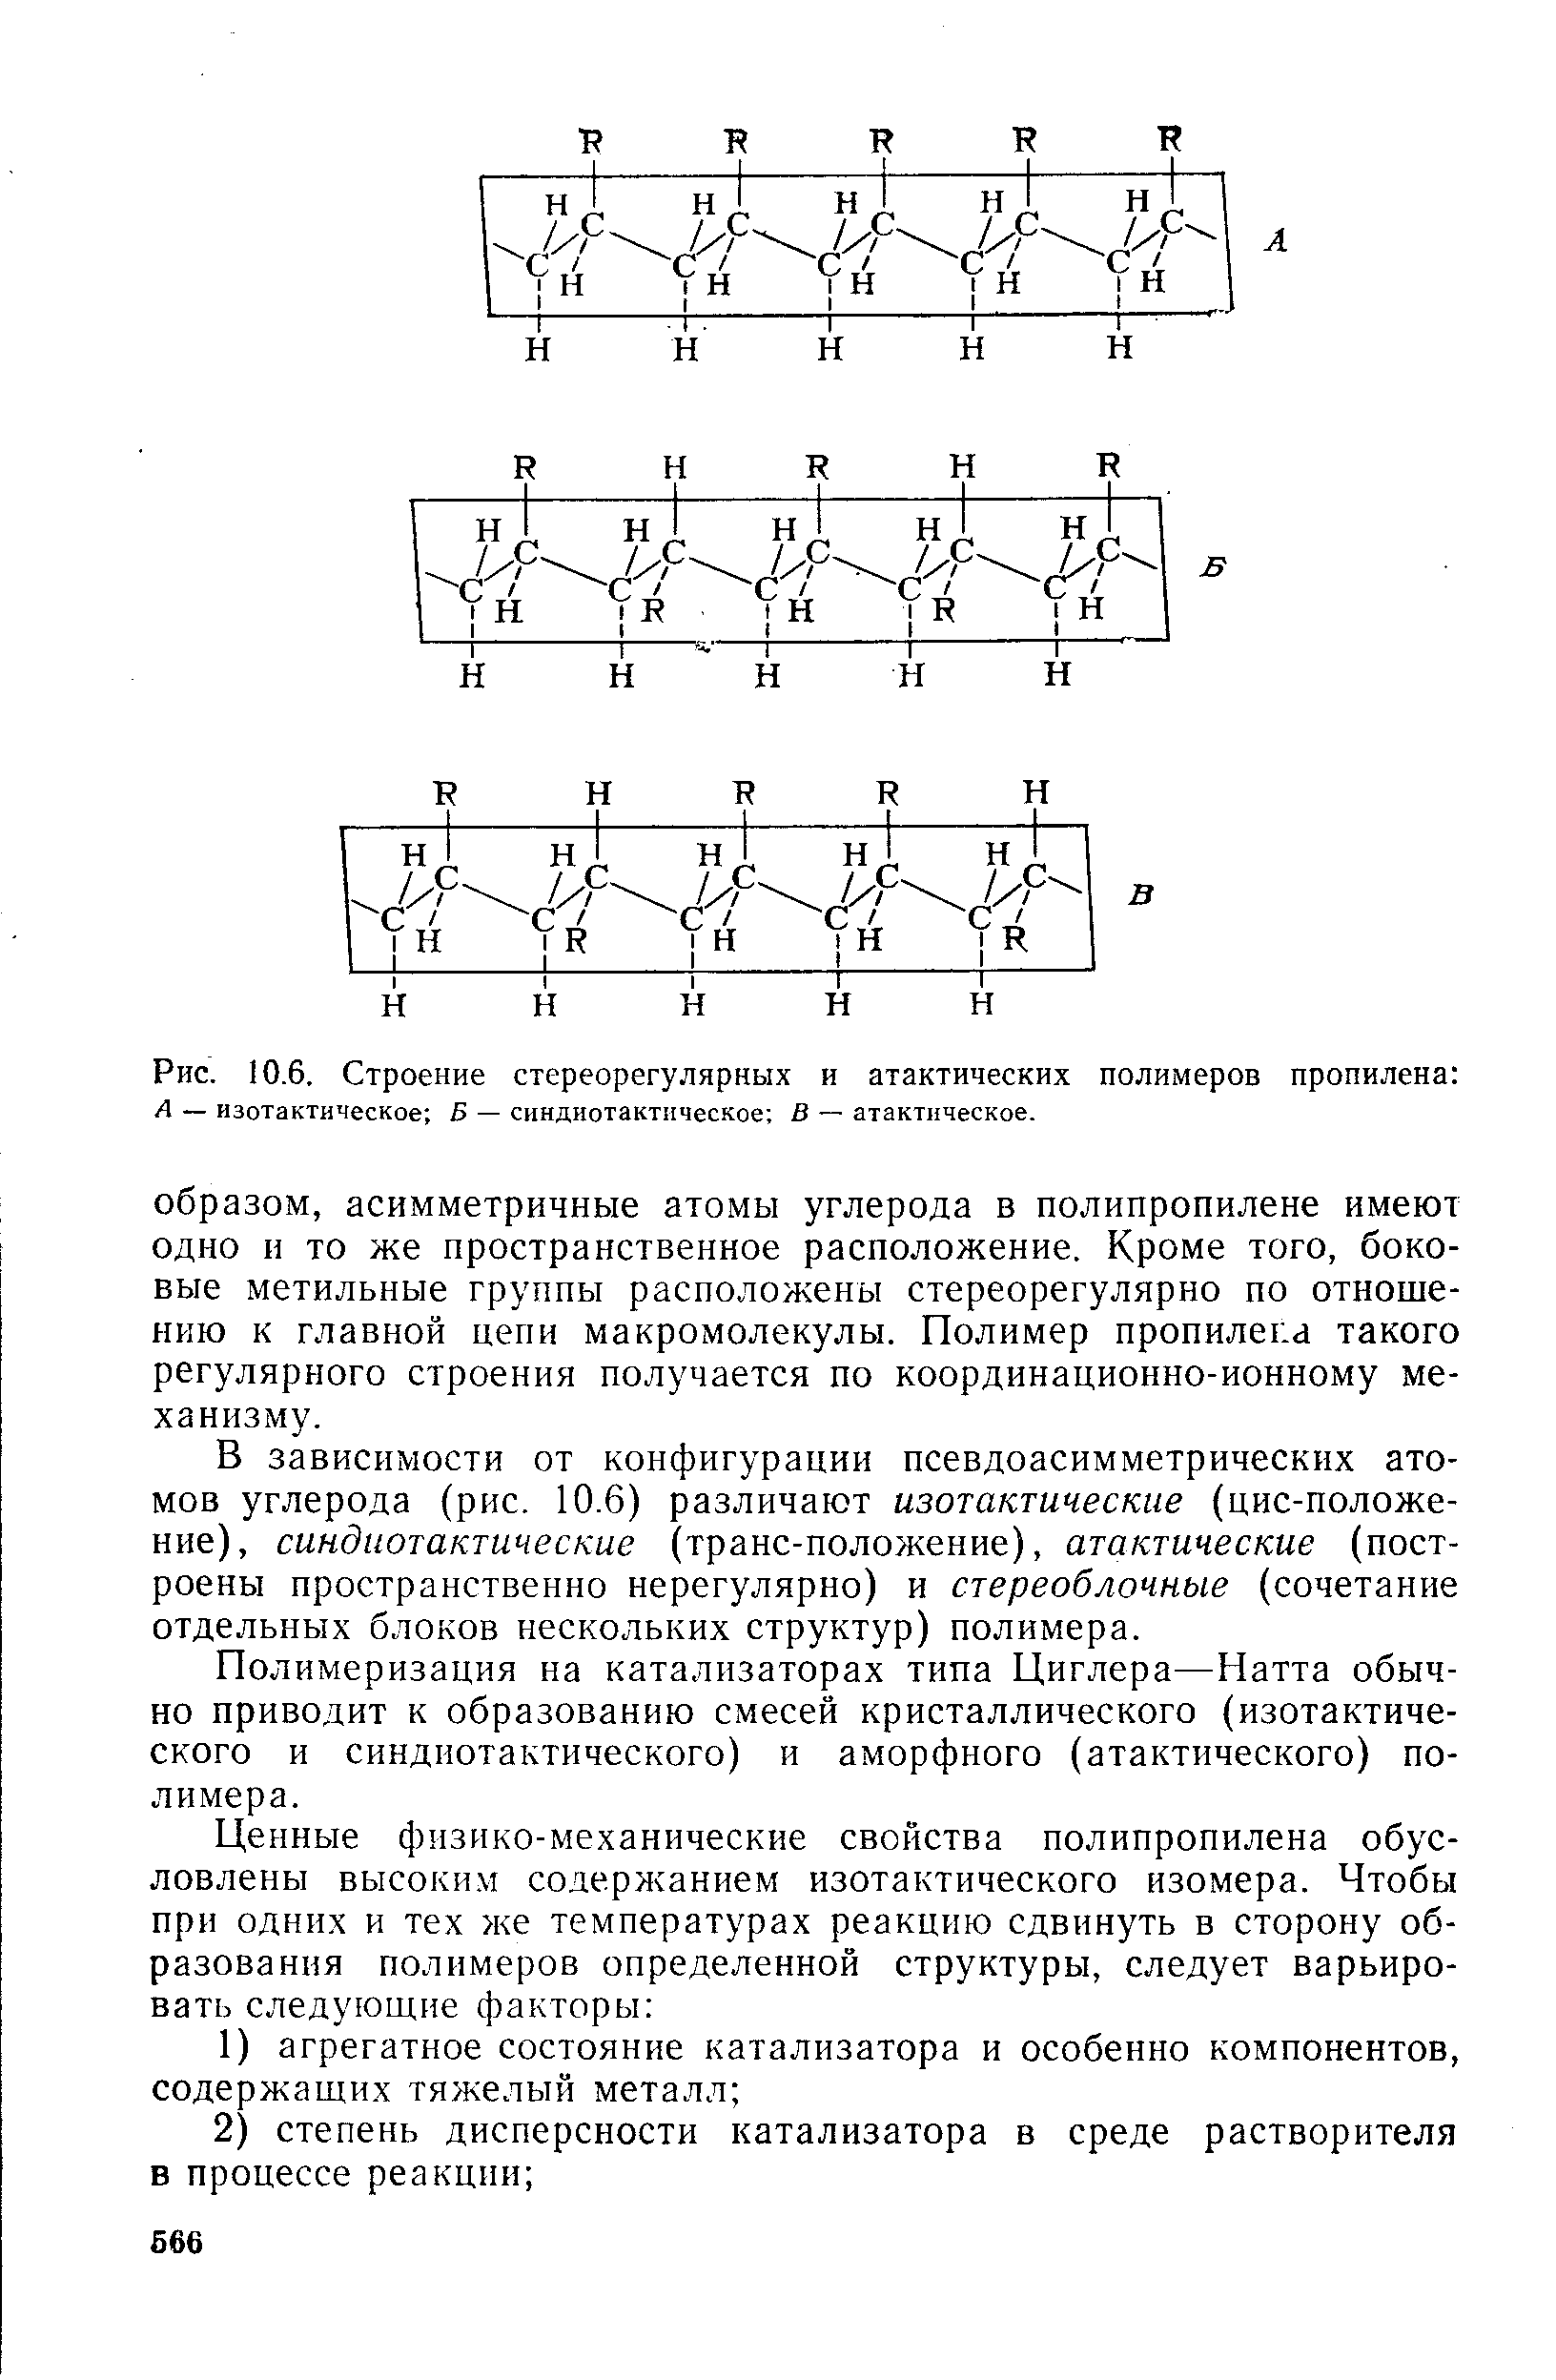 Полимеризация на катализаторах типа Циглера—Натта обычно приводит к образованию смесей кристаллического (изотактиче-ского и синдиотактического) и аморфного (атактического) полимера.